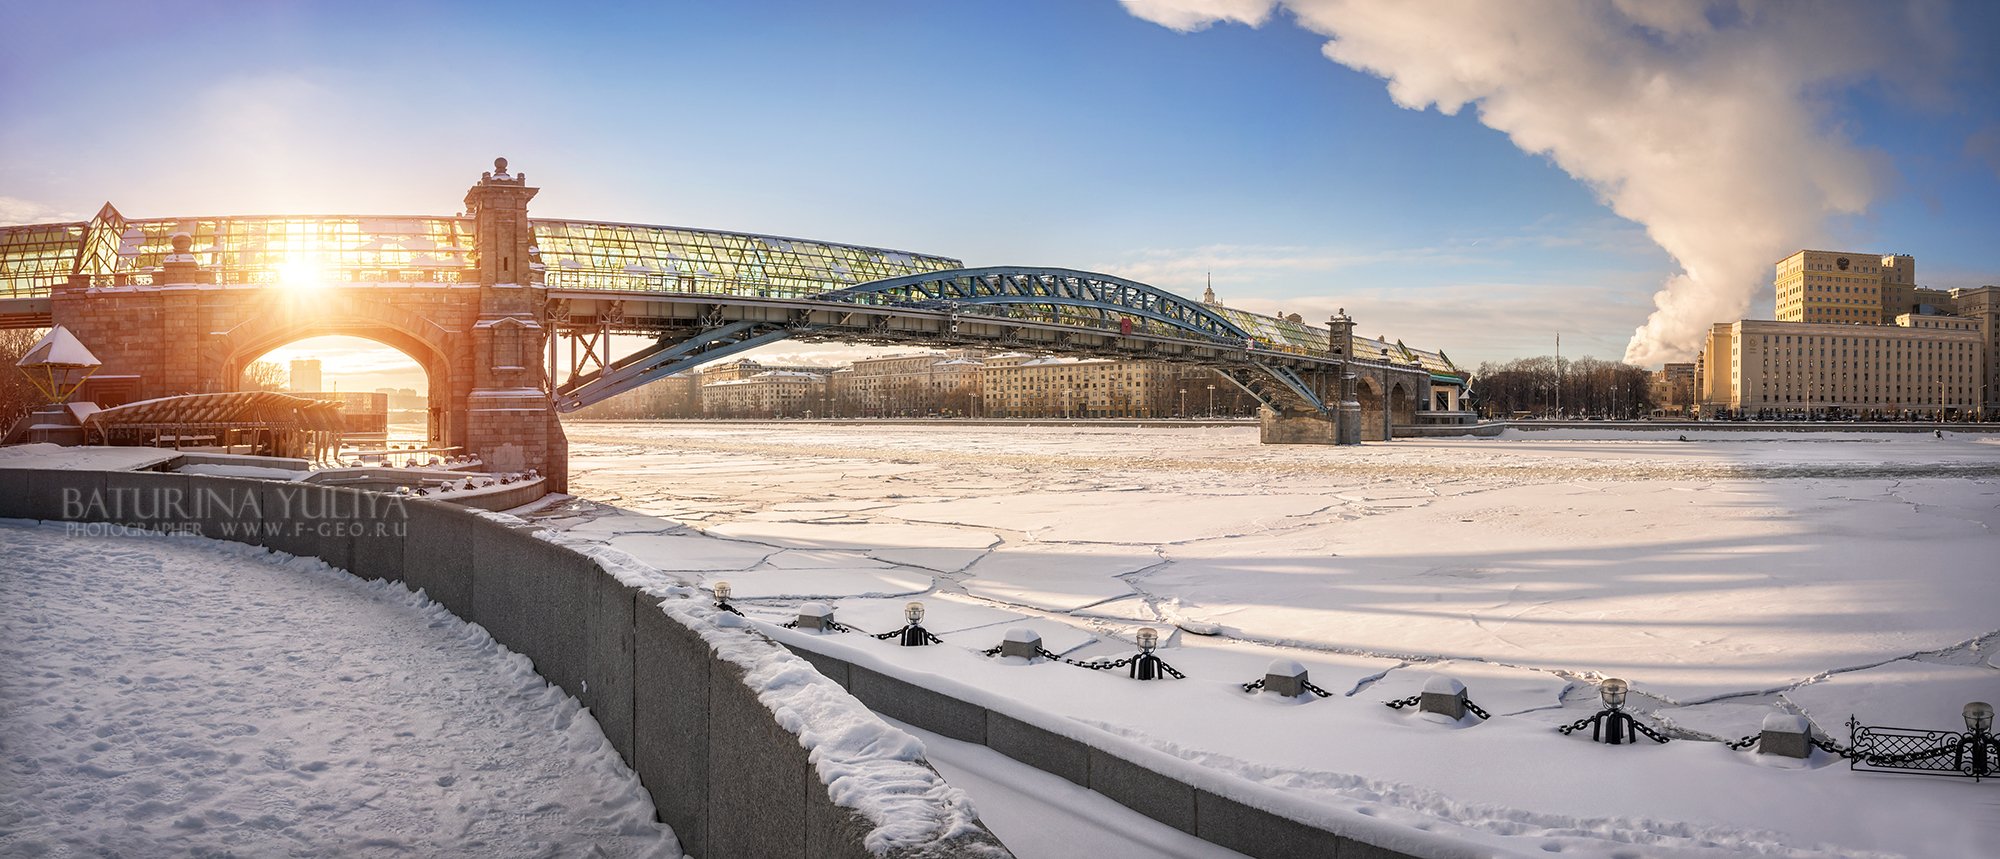 Москва, мост, Андреевский мост, зима, мороз, солнце, облака, снег, лед, река, Юлия Батурина